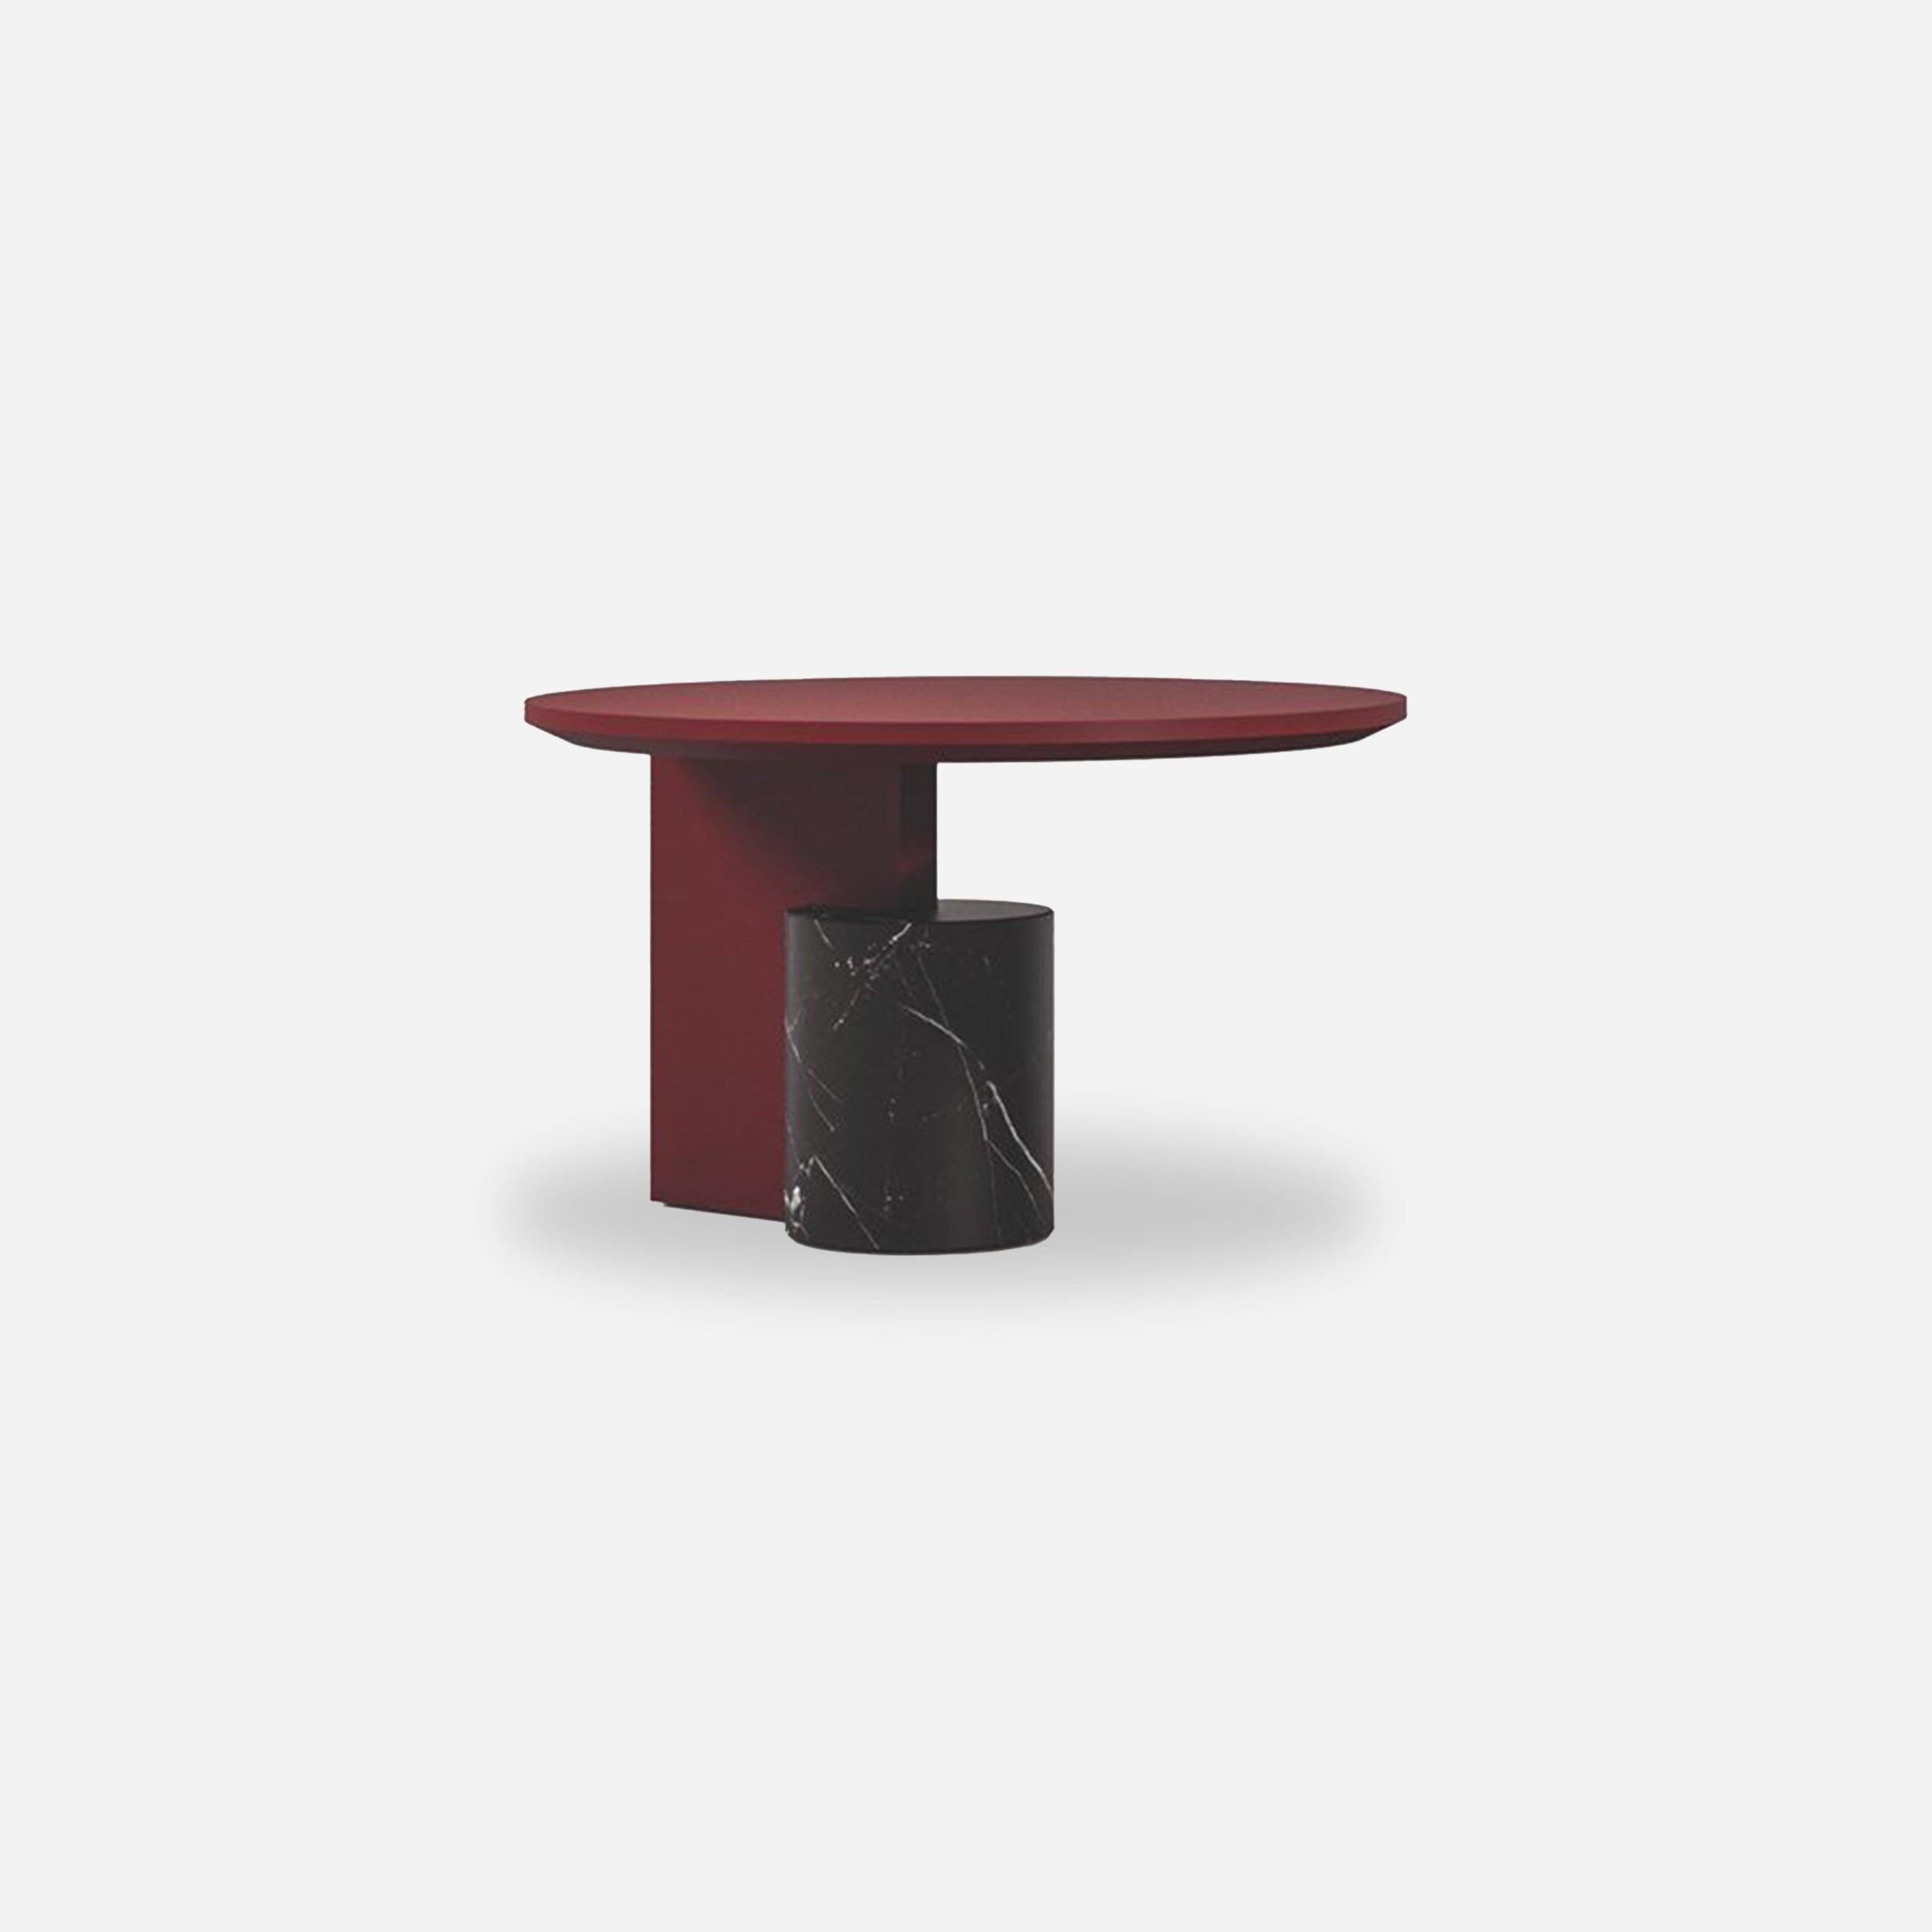 Table basse Sengu conçue par Patricia Urquiola.
Fabriqué par Cassina (Italie).

DESIGN/ONE TABLES BASSES
Une collection de trois tables basses design de Patricia Urquiola en combinaison avec le canapé éponyme, elles sont la réponse à tout besoin